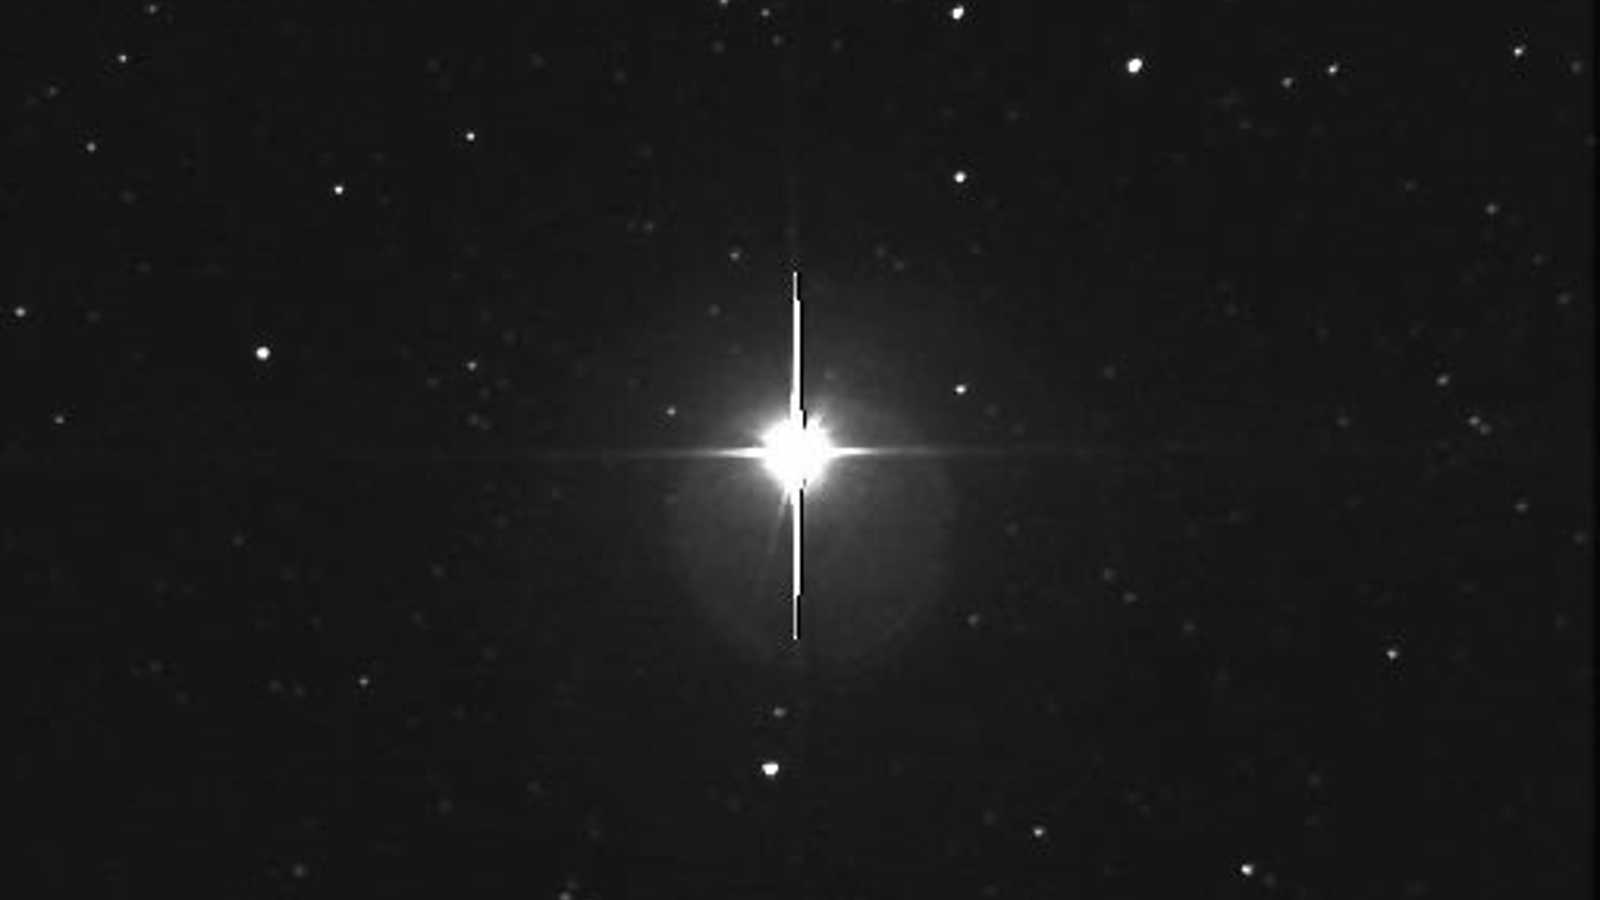 Esta supernova bastante cintilante foi observada na Constelação da Vela, no ano de 1999. Chamada de Nova Velorum 1999 (ou V382 Velorum), ela brilhou de forma mais luminosa do que muitas estrelas famosas. Uma supernova ocorre quando a superfície de uma estrela anã branca sofre uma tremenda explosão termonuclear, destruindo suas camadas externas. A imagem acima registrou o momento de sua brilhante detecção, na Austrália. As pontas em forma de cruz são em função de fenômenos ópticos no telescópio fotográfico e sua câmera